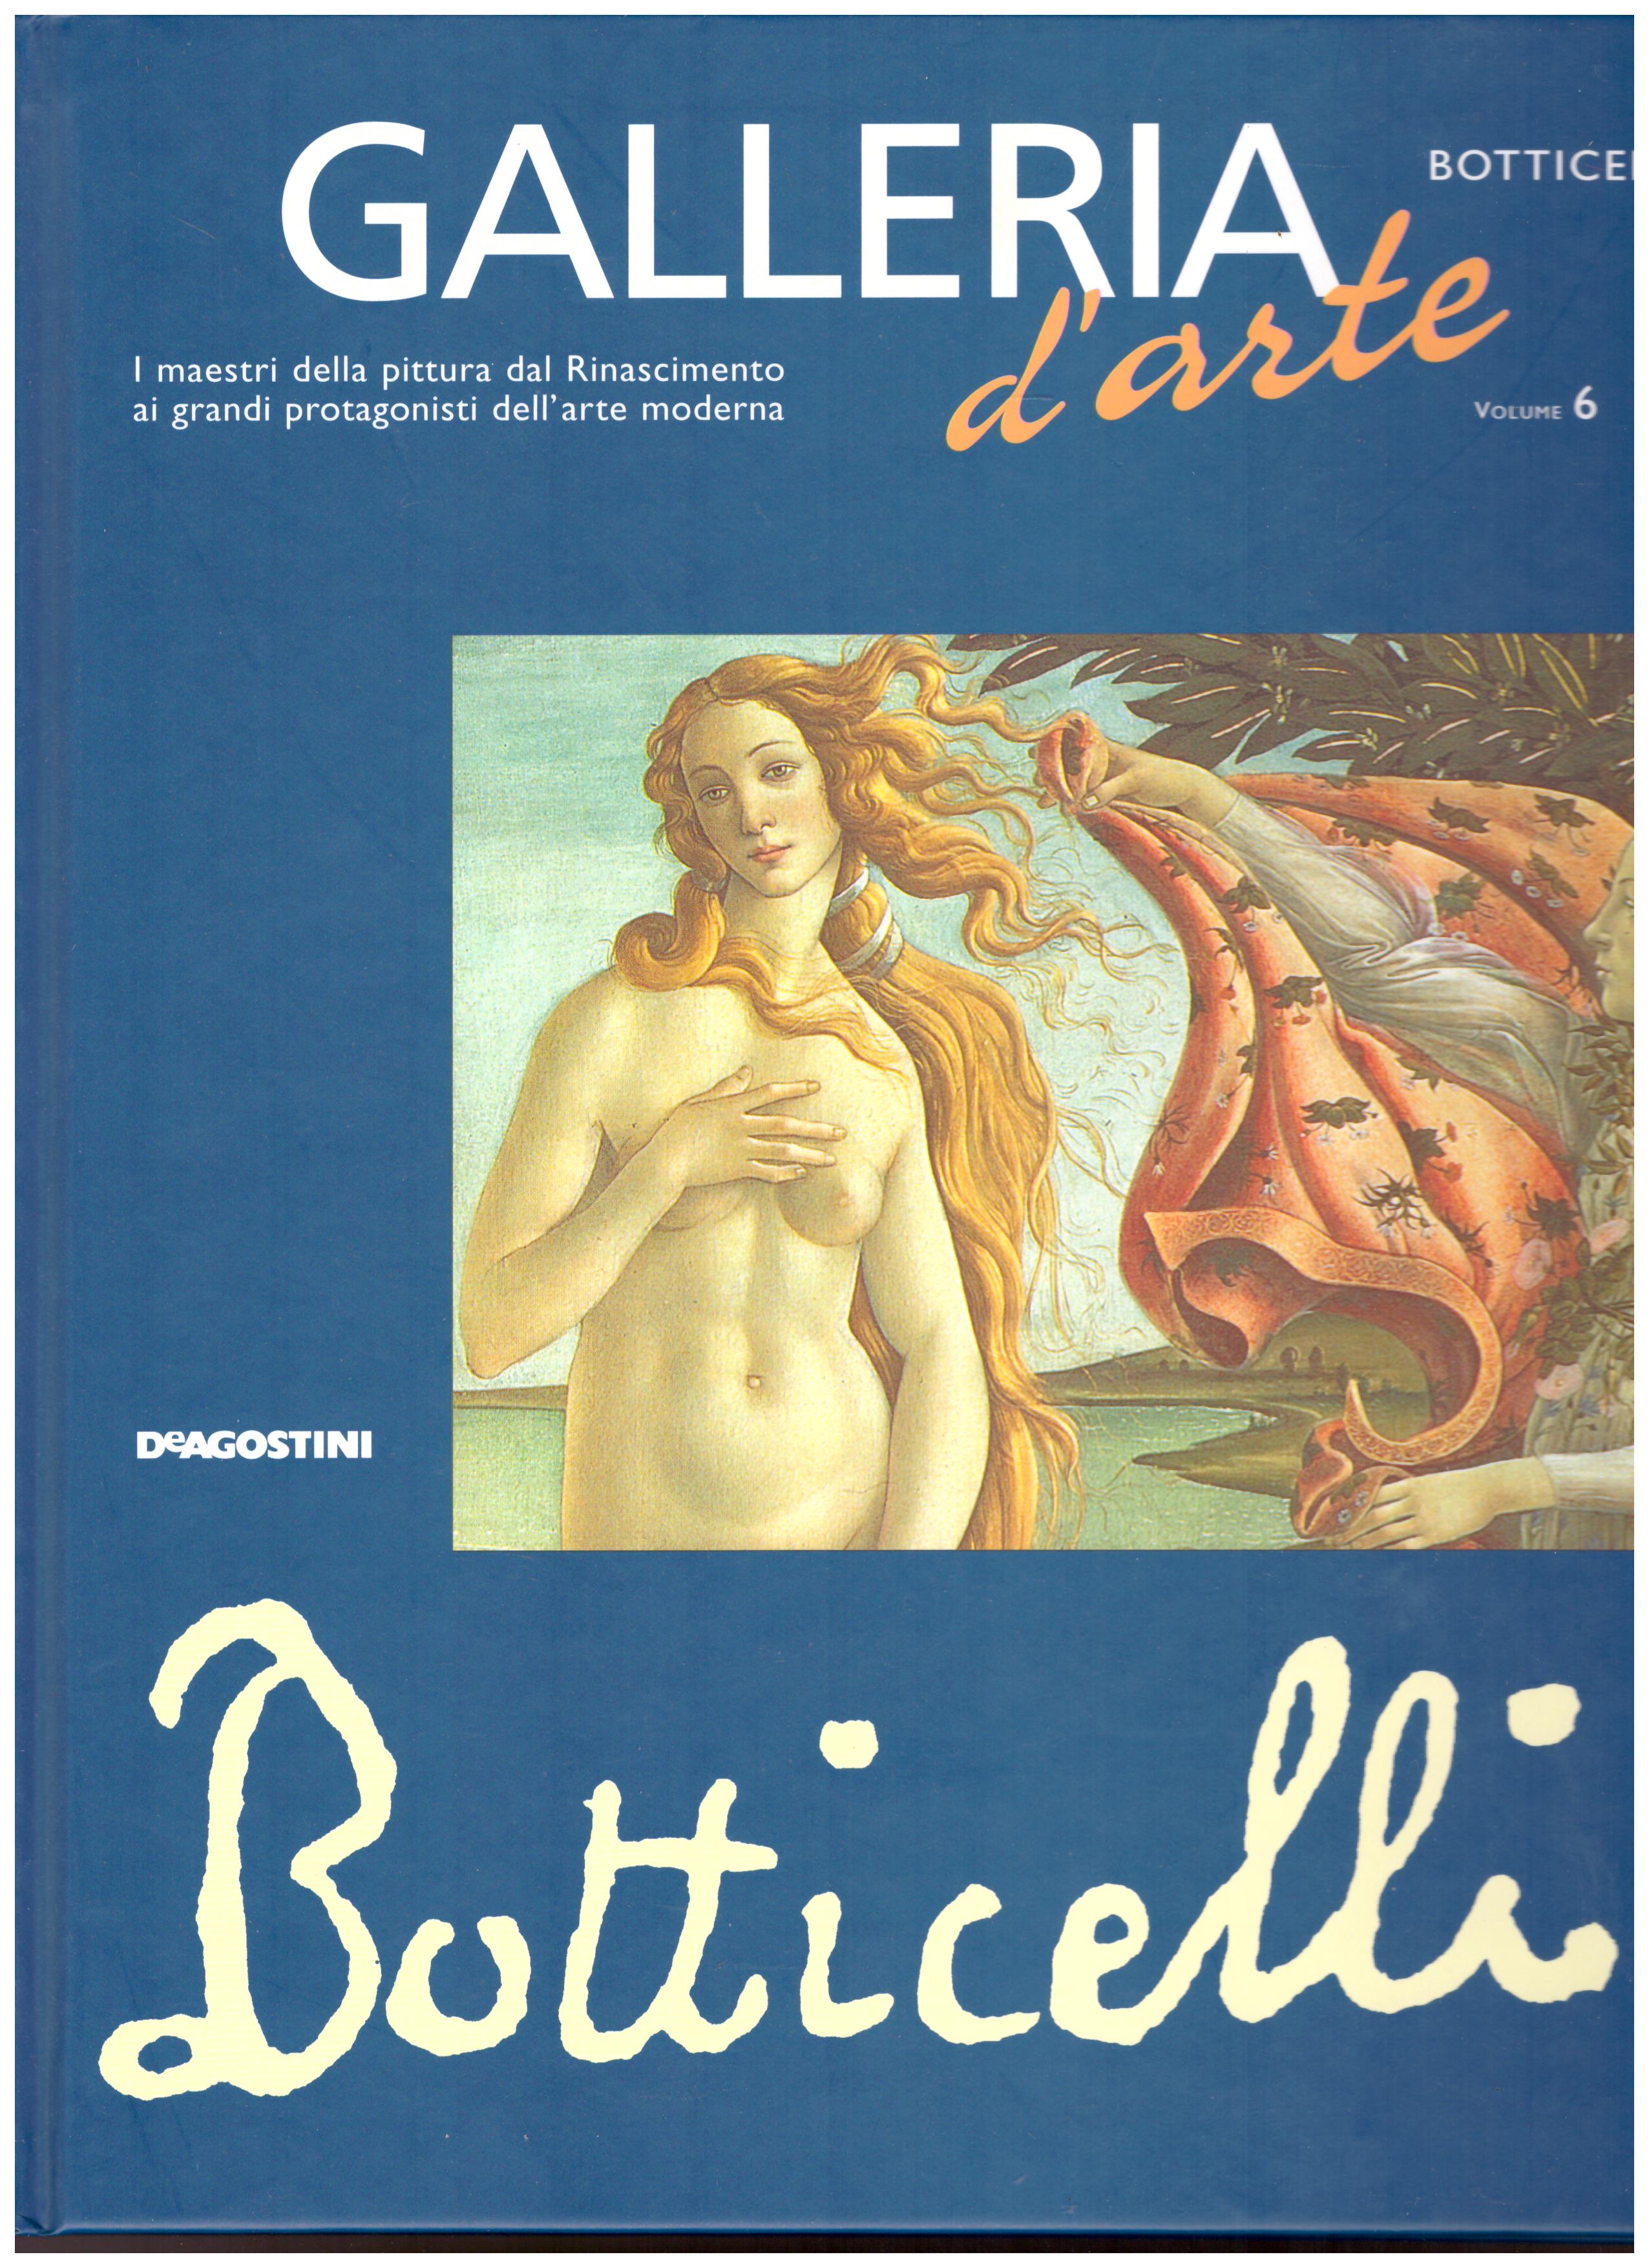 Titolo: Galleria d'arte, Botticelli Autore: AA.VV.  Editore: DeAgostini, 2001